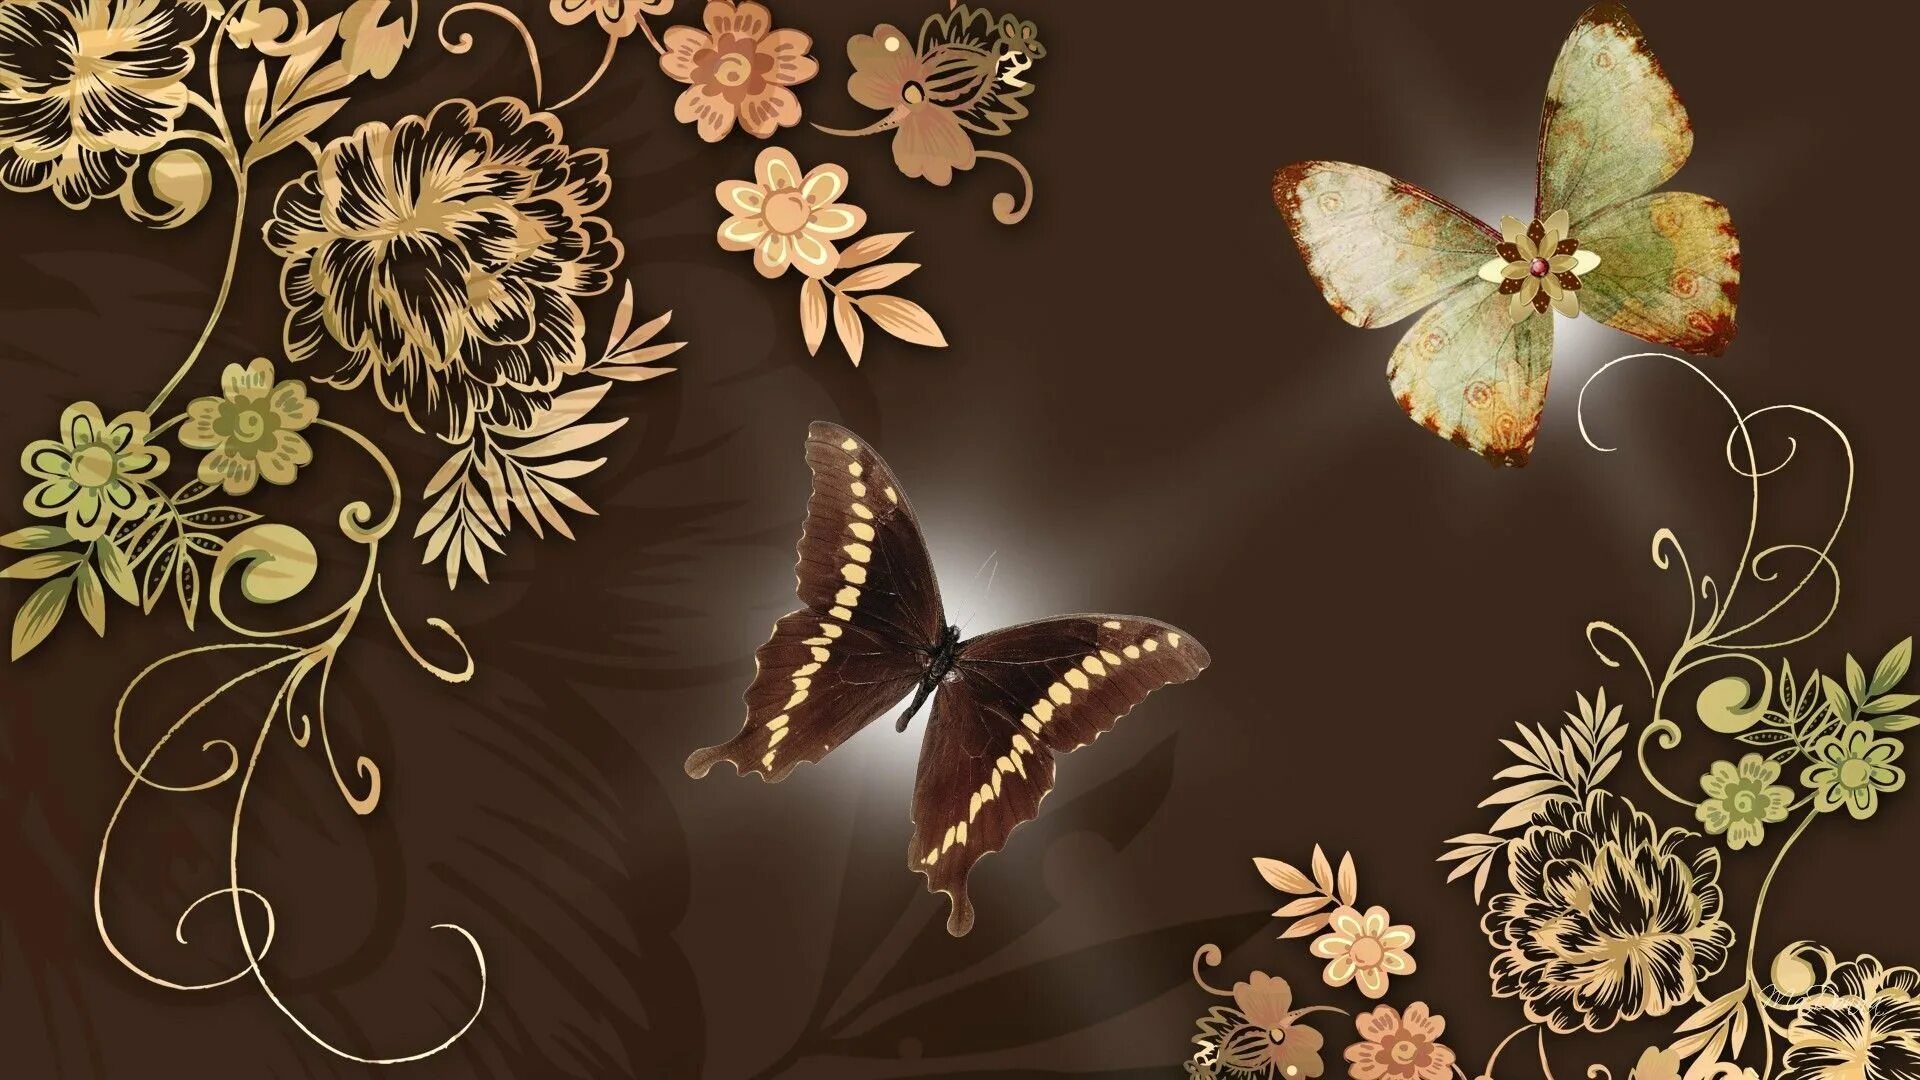 Обои фон бабочка. Фон бабочки. Коричневые цветы. Фотообои бабочки. Красивый фон с бабочками.